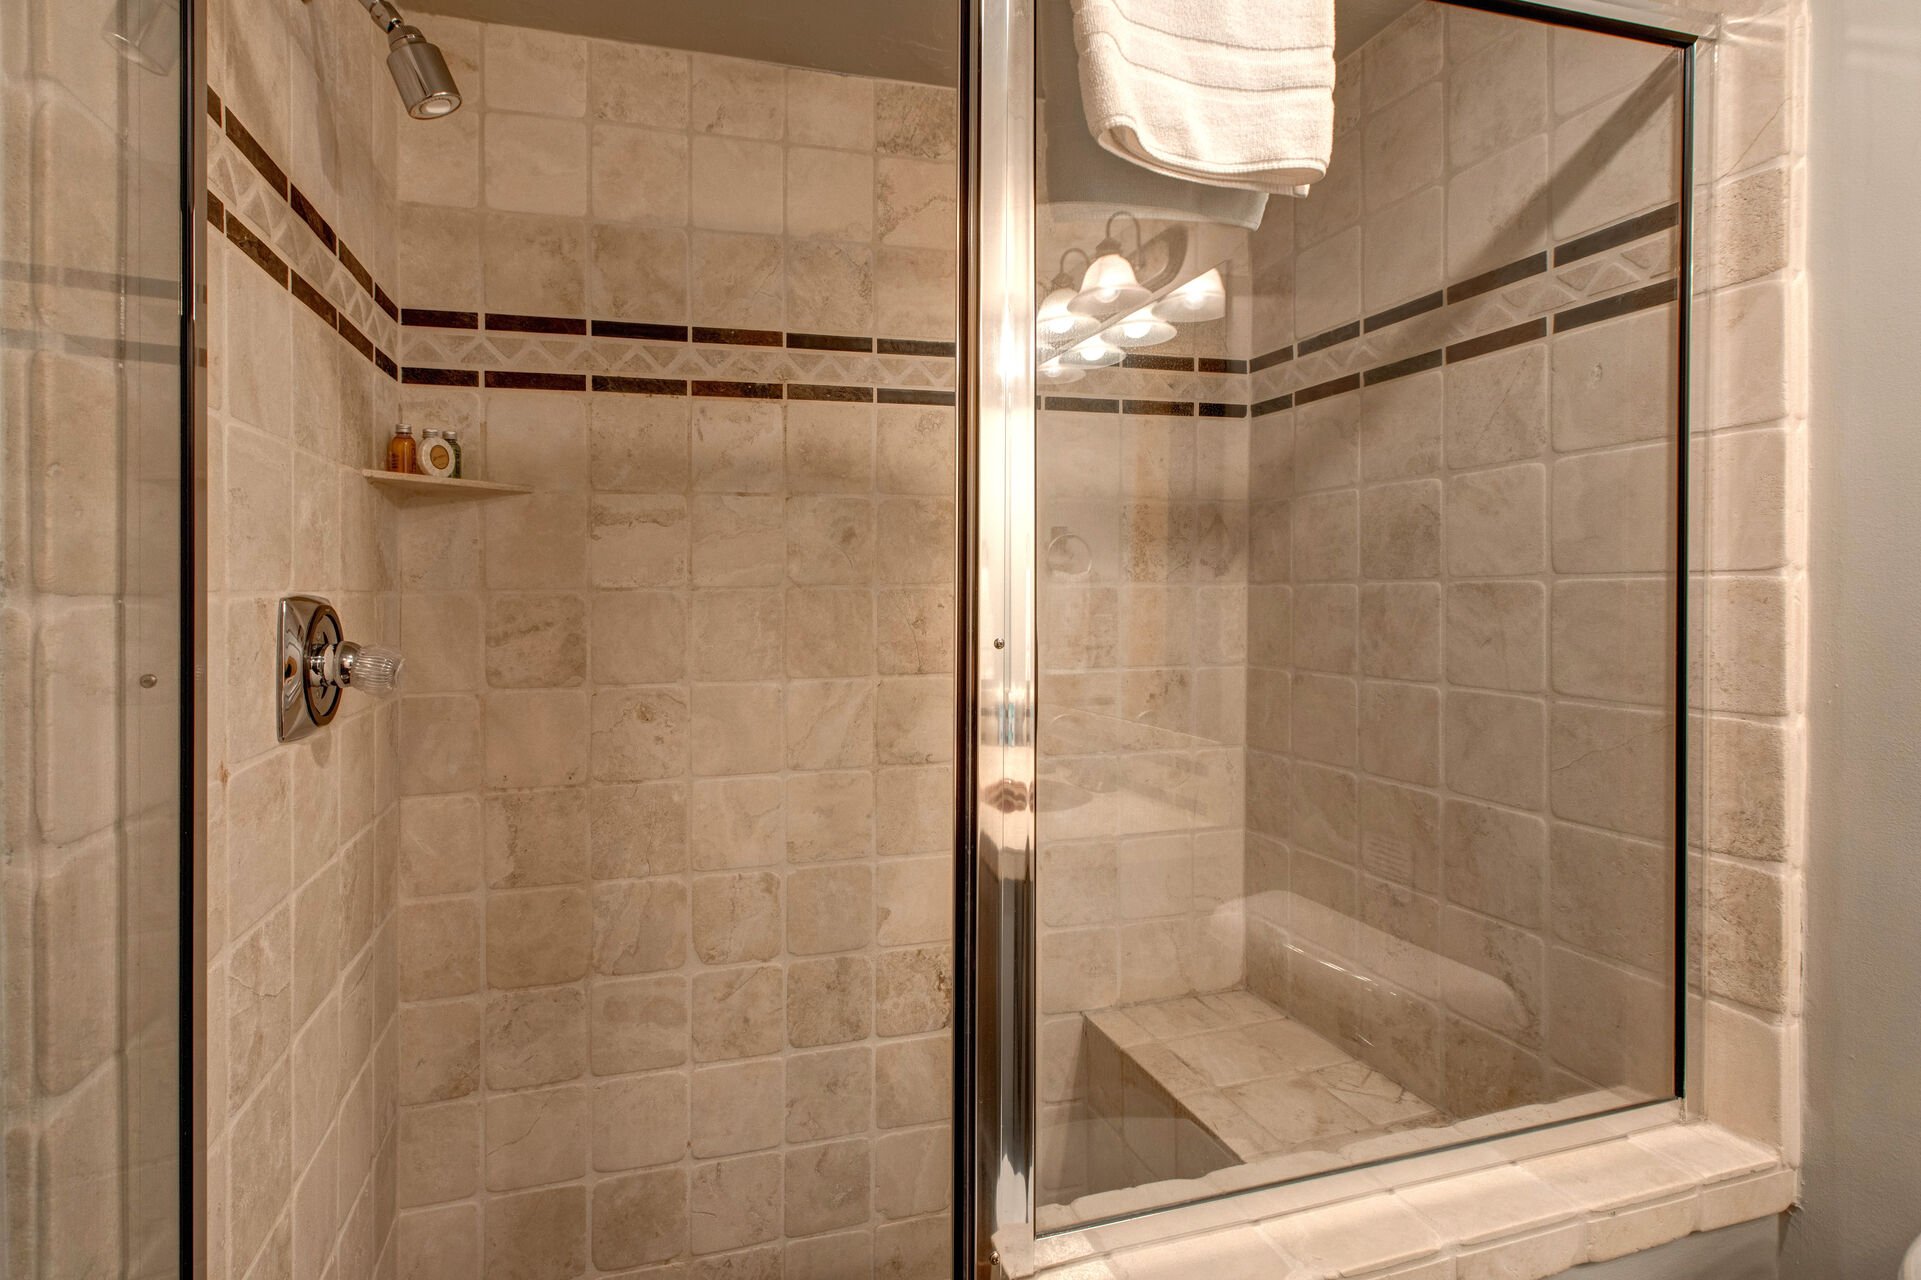 Full Shared Bathroom with Tile Shower